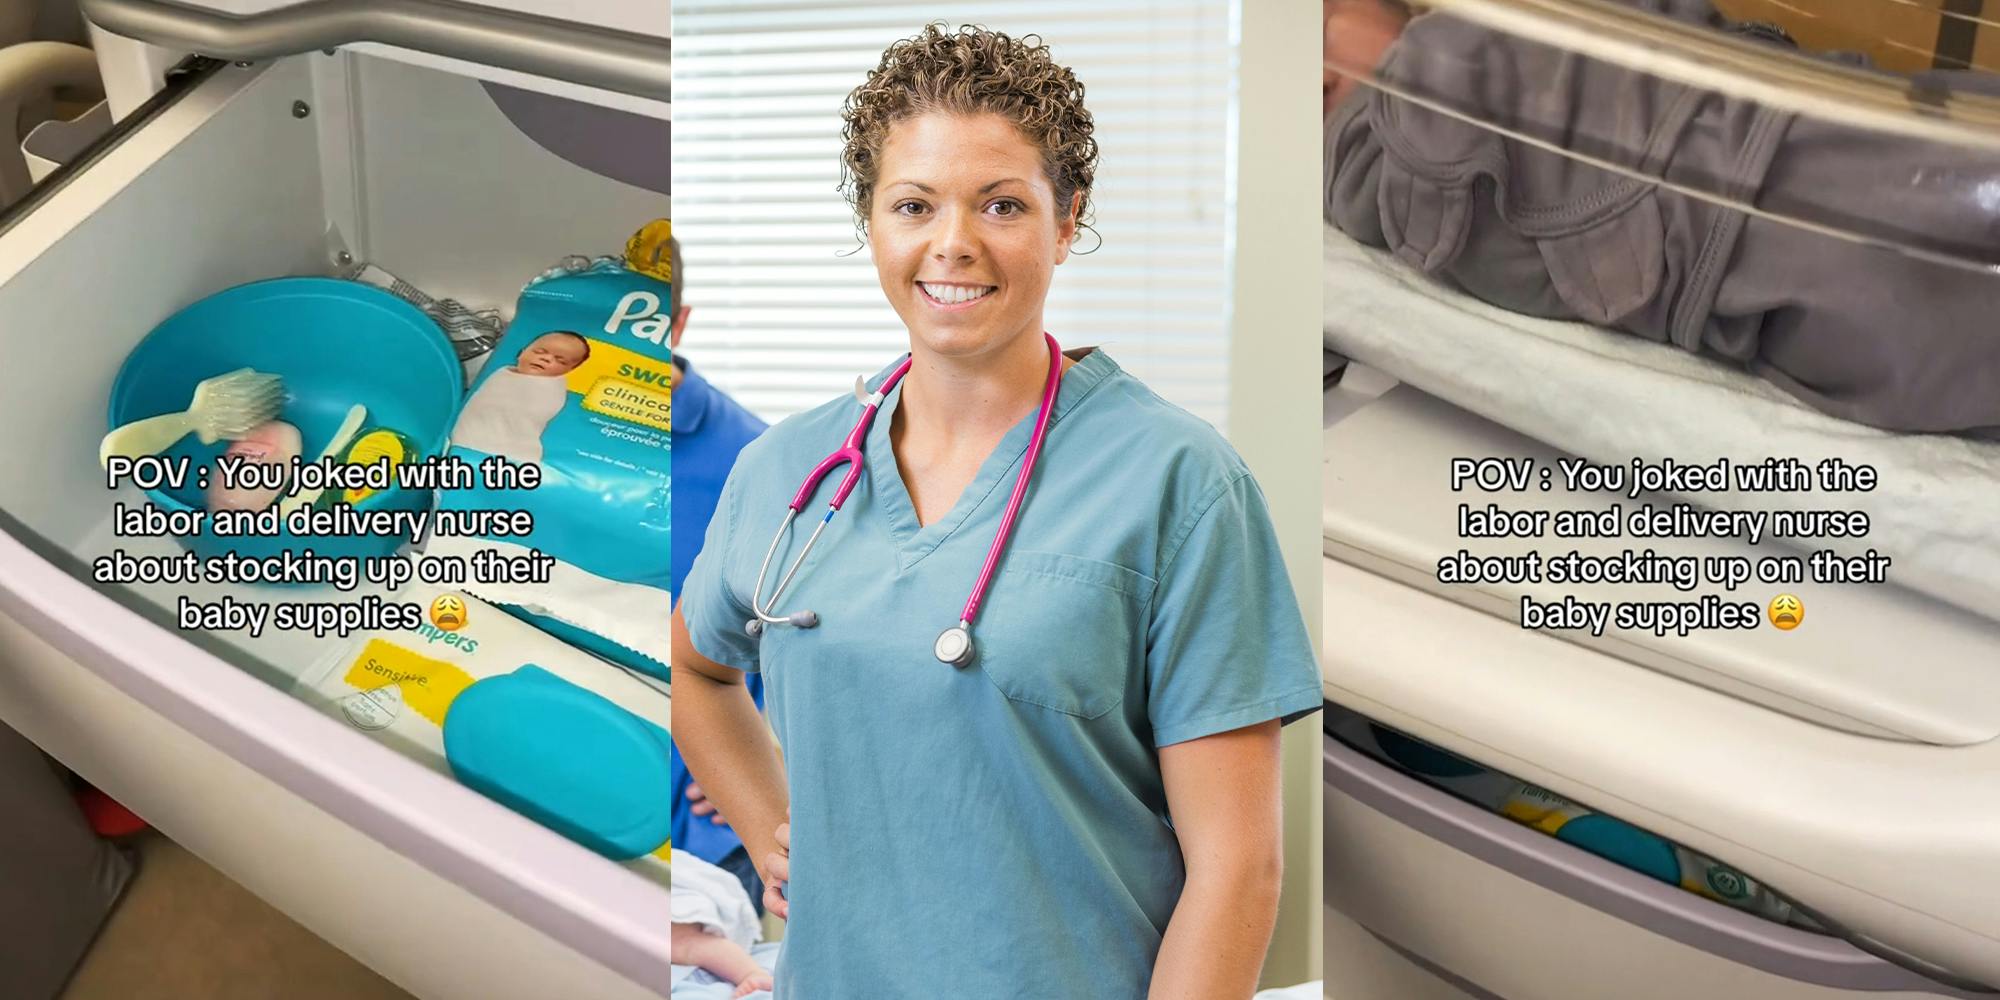 Baby supplies in drawer; Nurse smiling